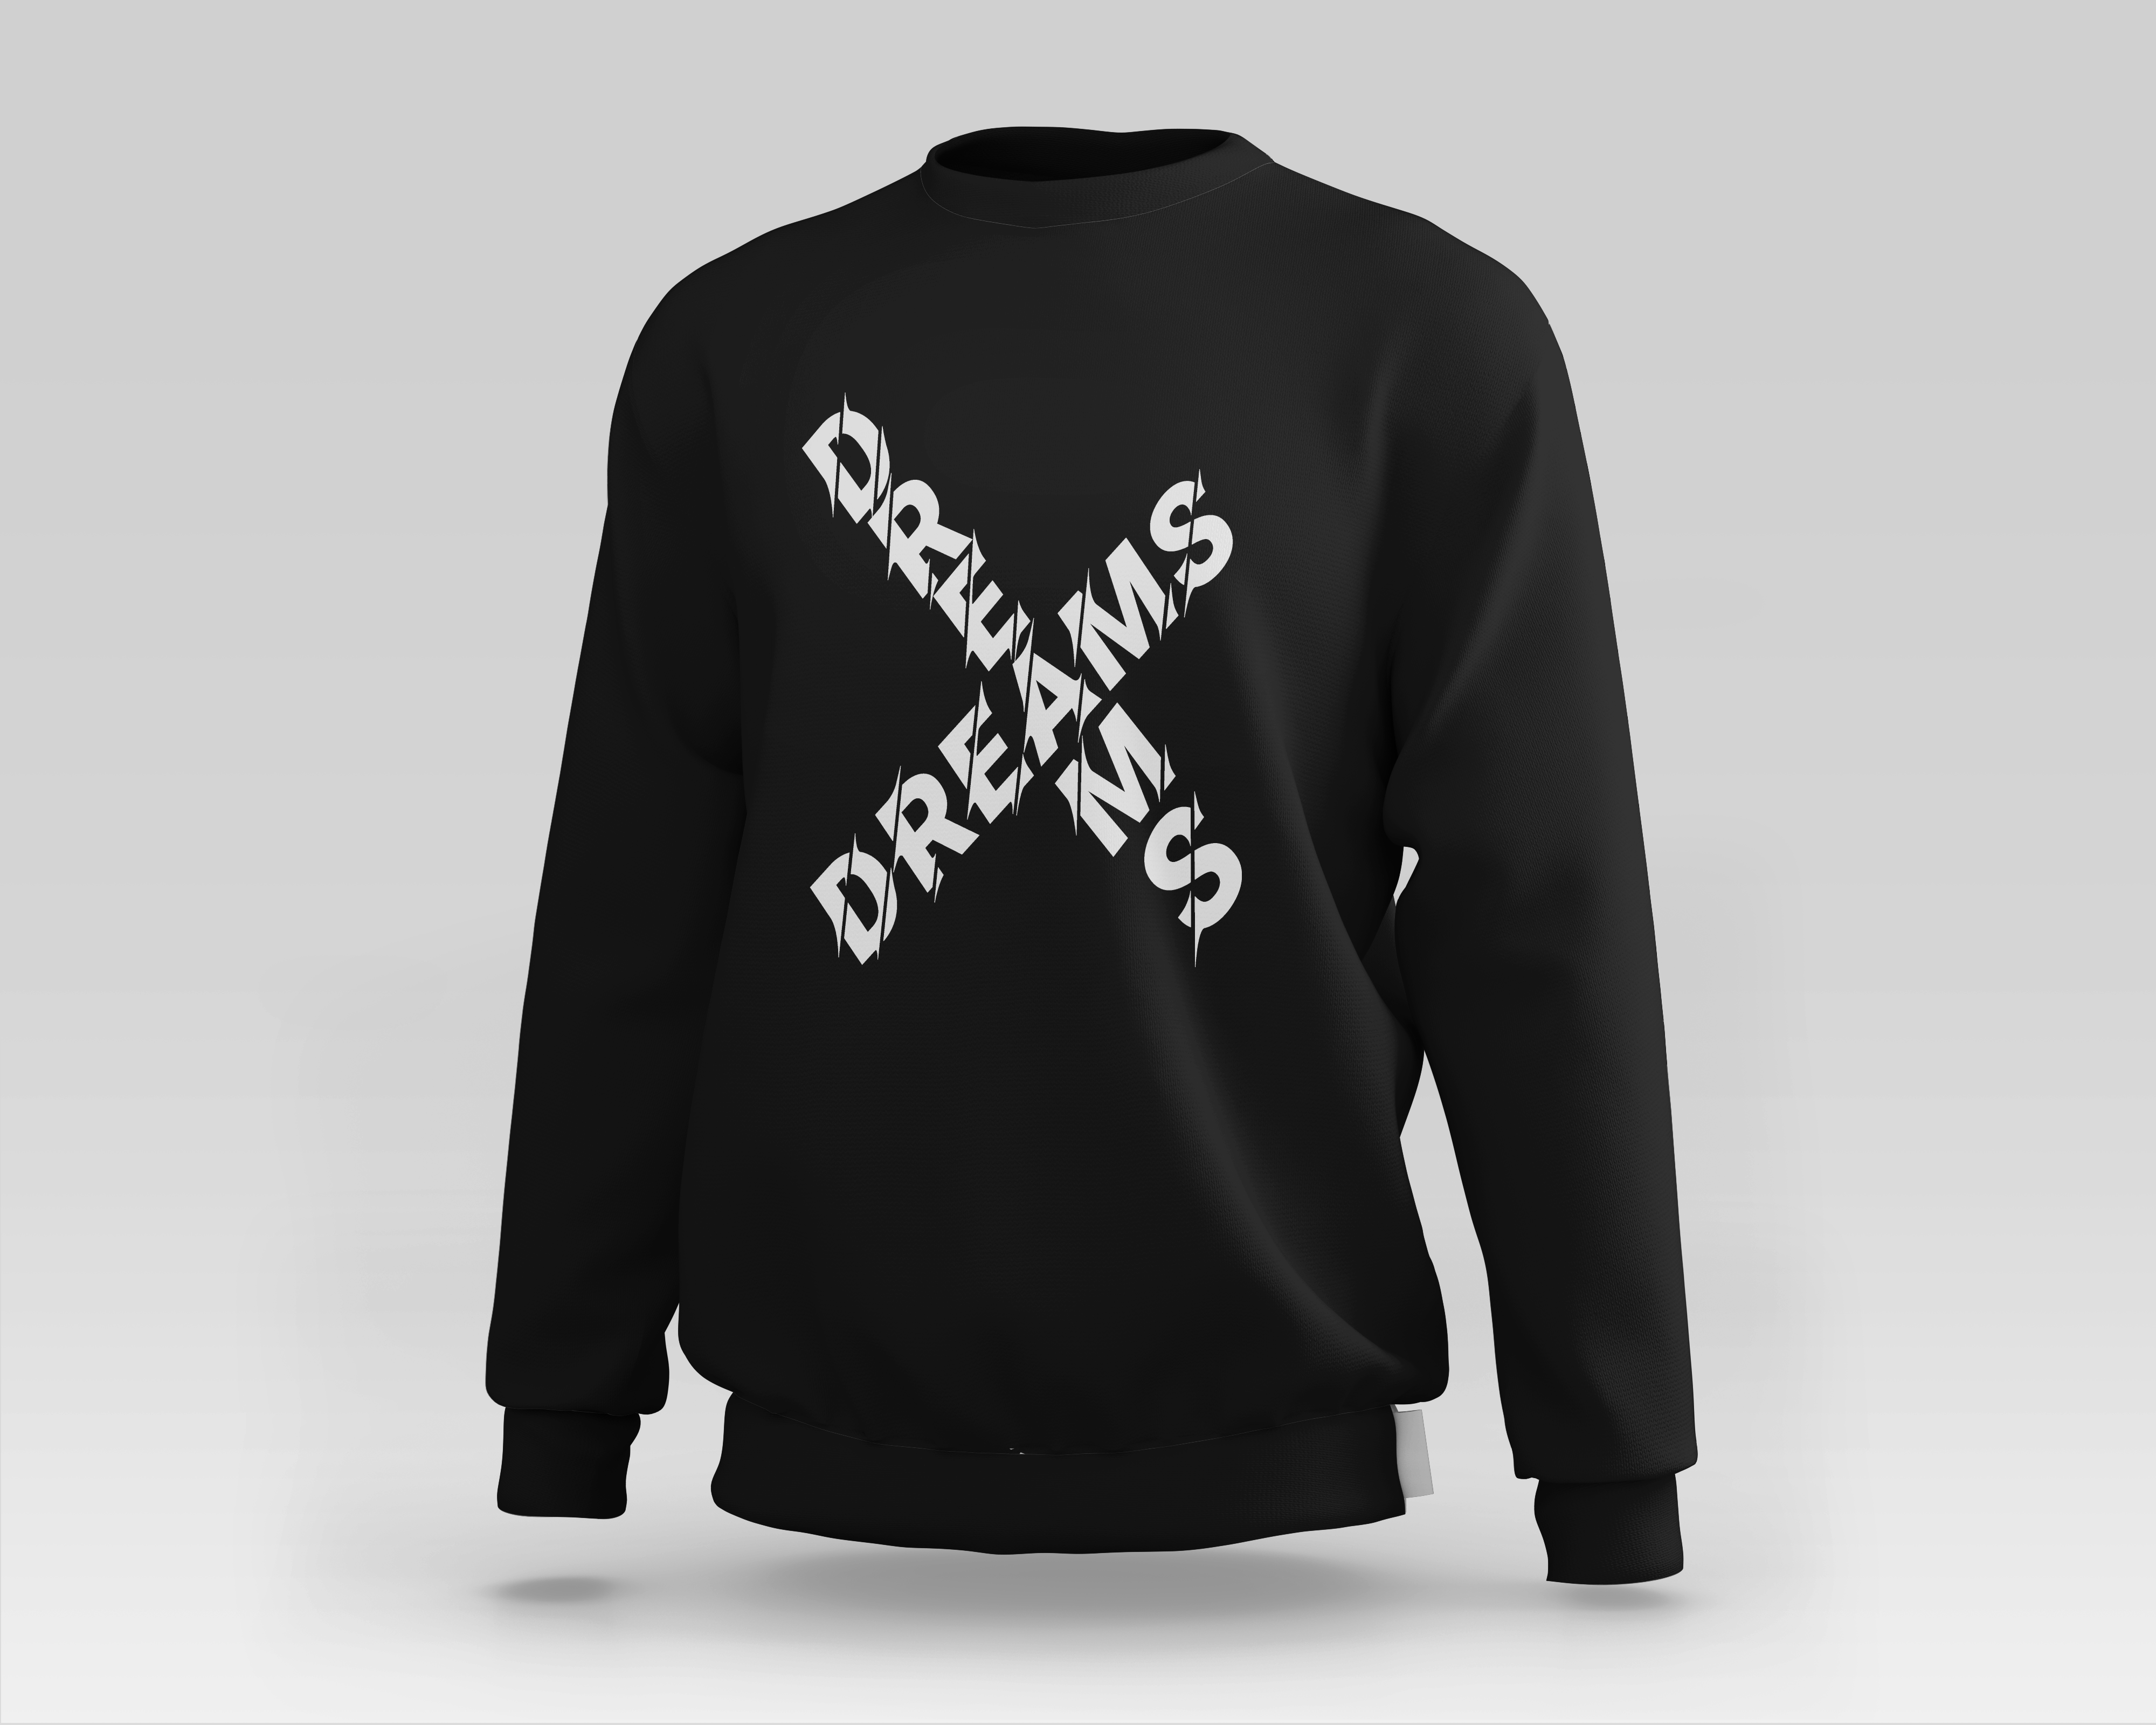 Dreams Crewneck Sweater in Black & White